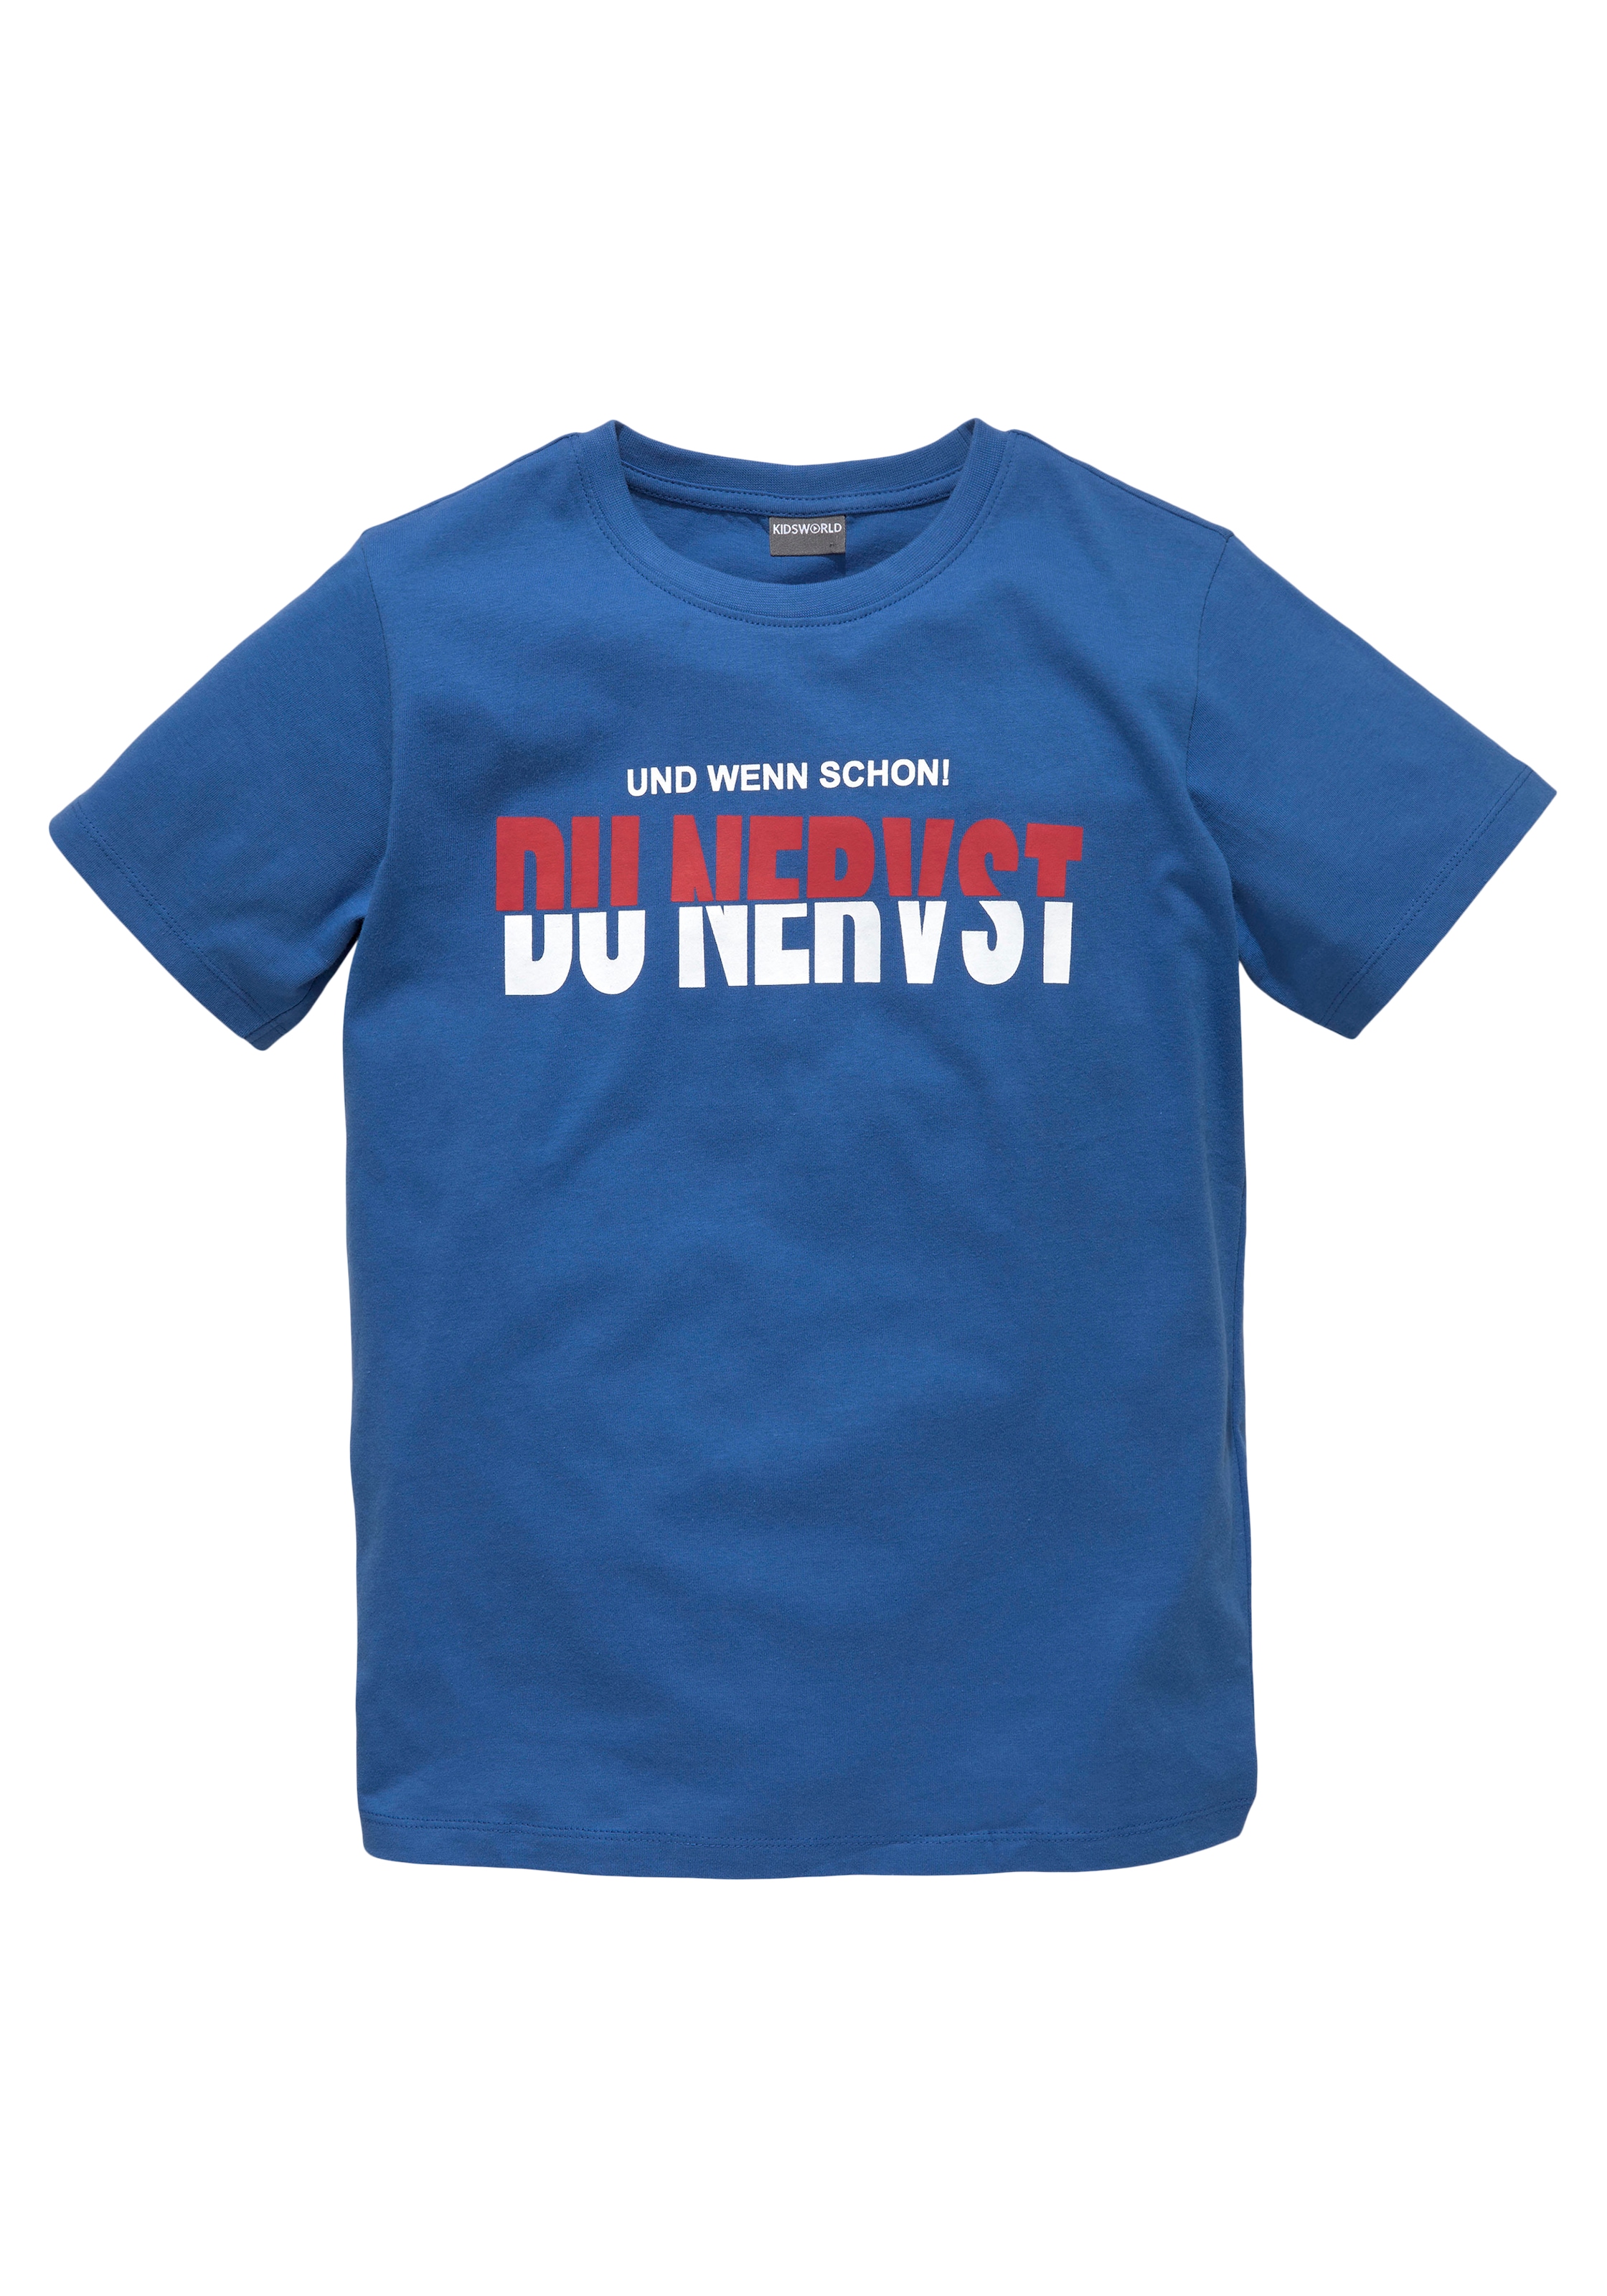 KIDSWORLD T-Shirt »DU NERVST«, bei OTTO Sprücheshirt